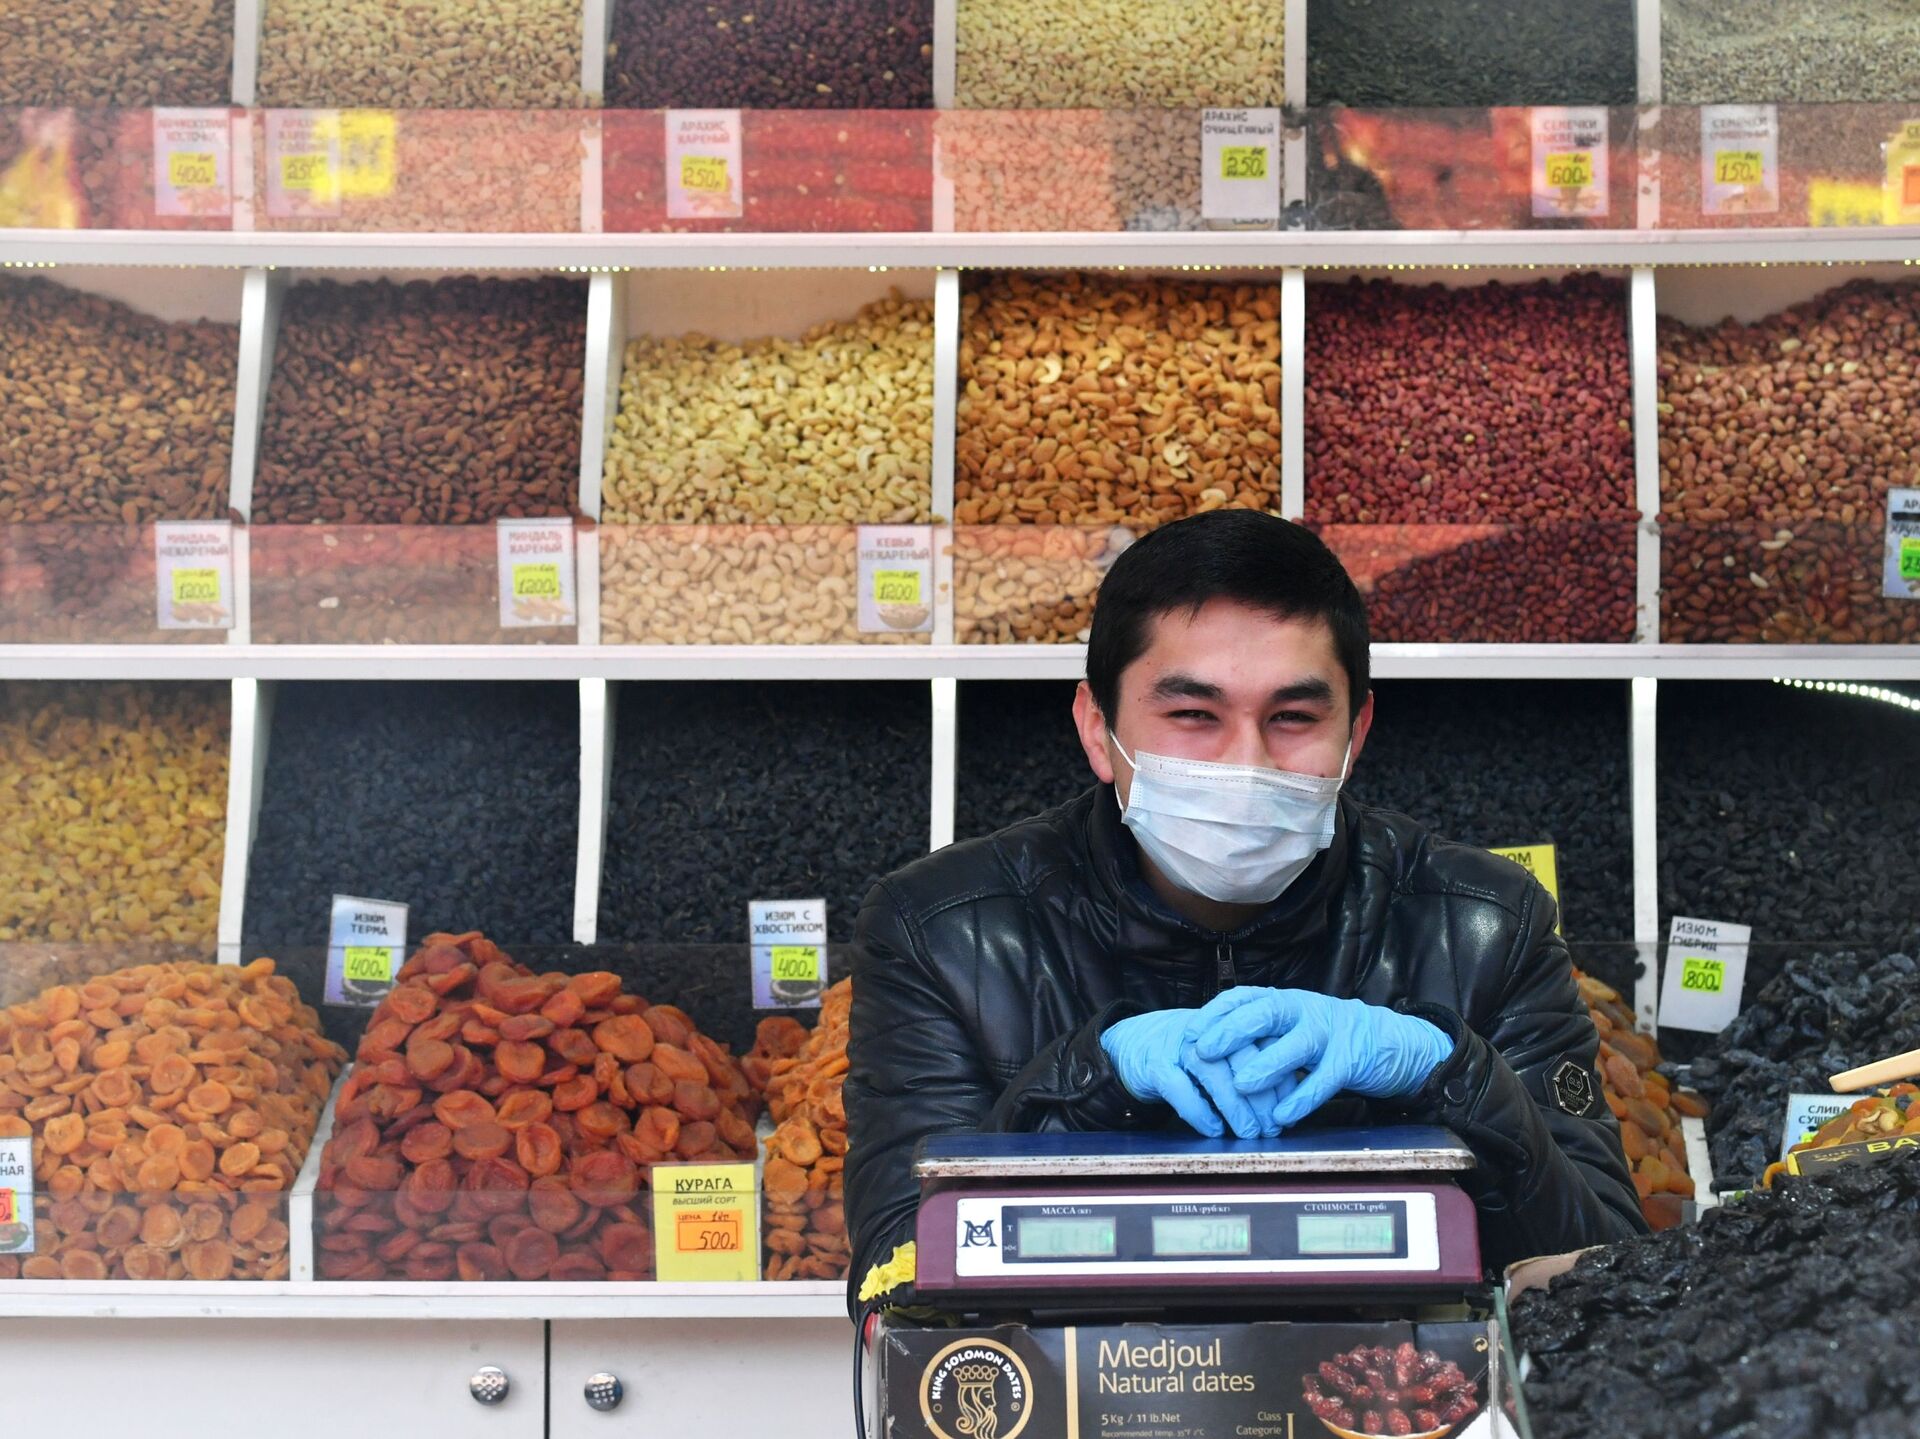 Таджик на рынке. Преображенский рынок. Мёд на рынке Таджикистан. Экономика Таджикистана. Продавцы рынка в масках.